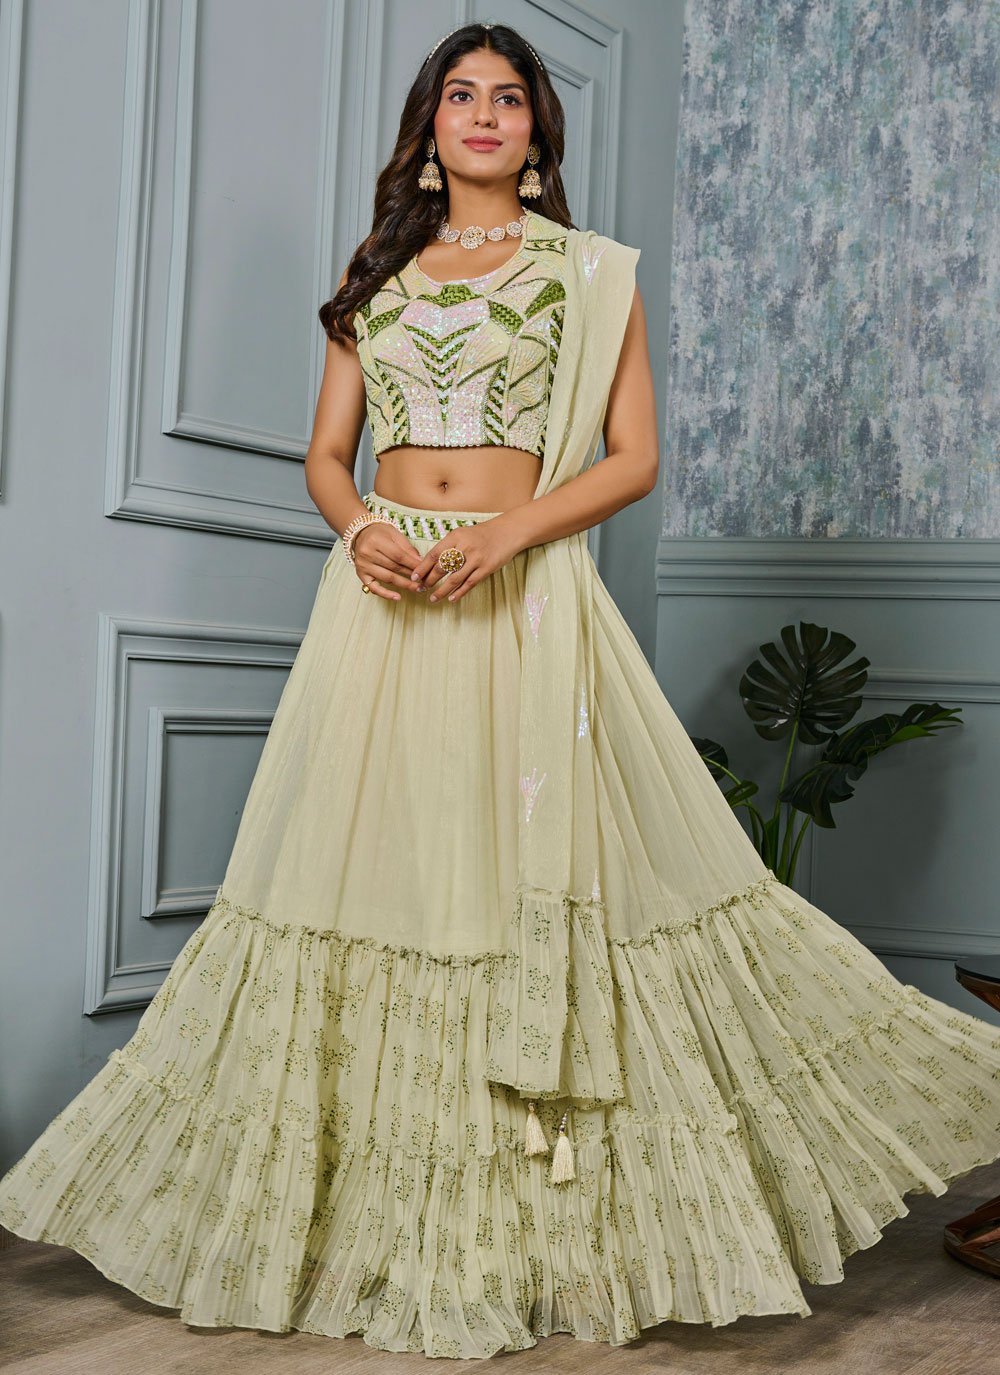 Indian Ethnic Wedding Style Designer Party Wear Lehenga Choli With Duptta  Women | eBay